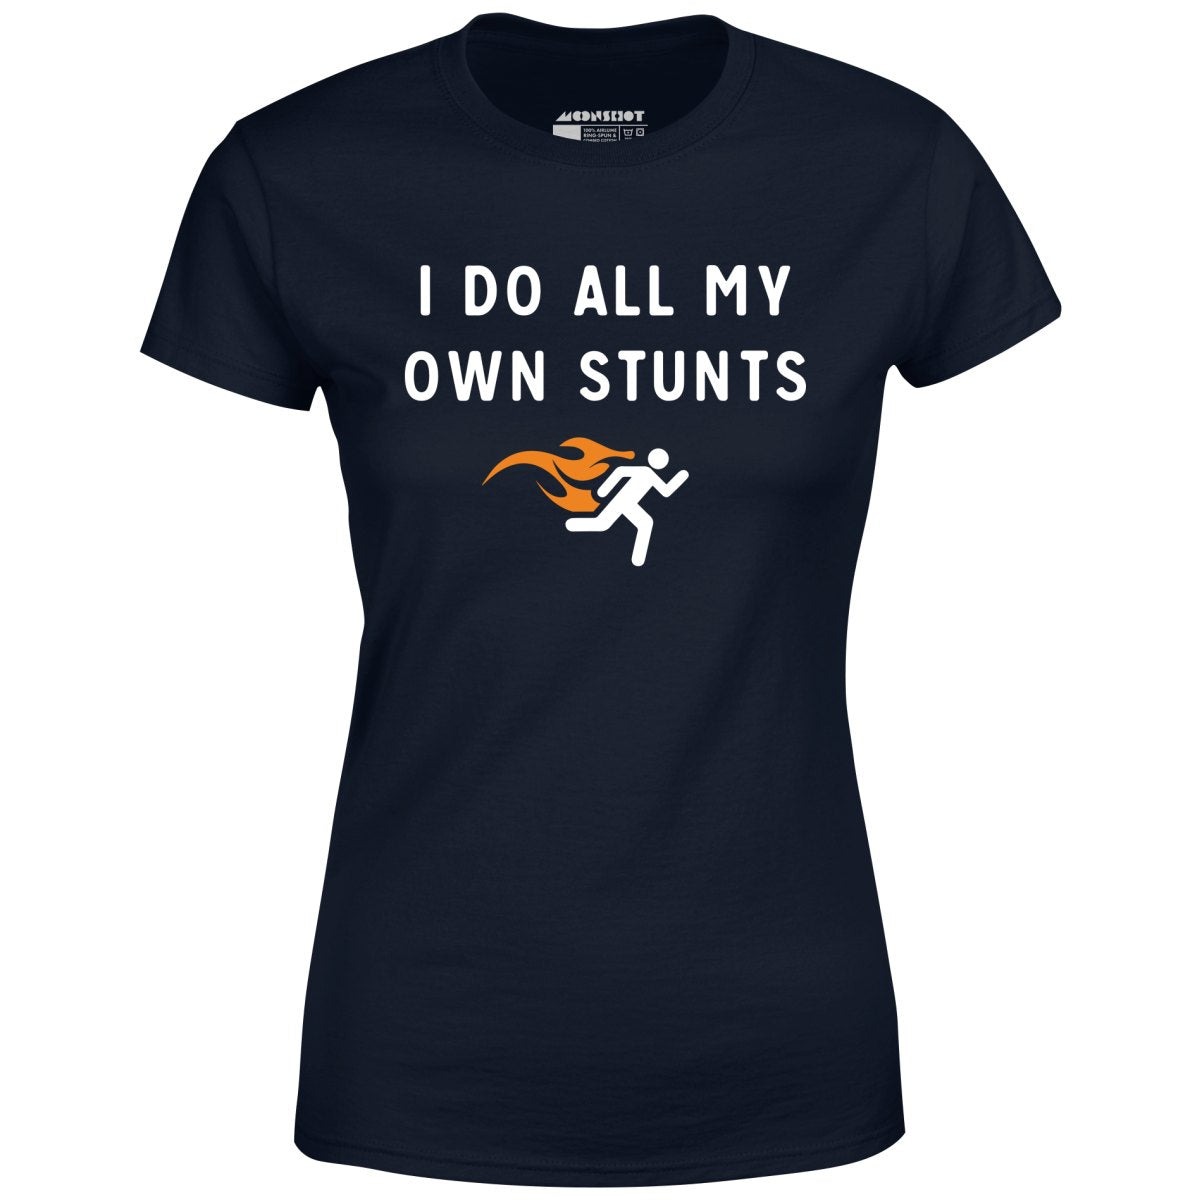 I Do All My Own Stunts - Women's T-Shirt